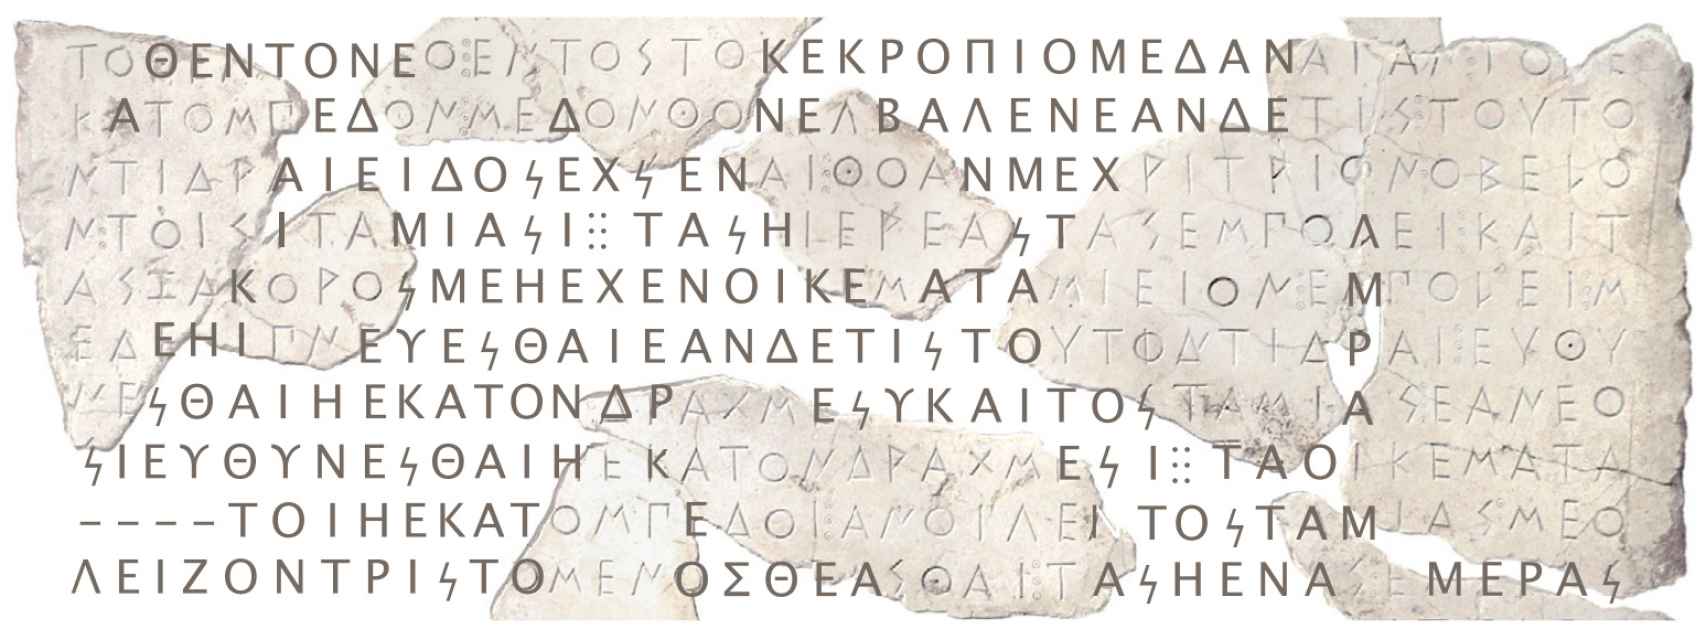 Ejemplo de restauración de una inscripción griega a través de Ithaca.